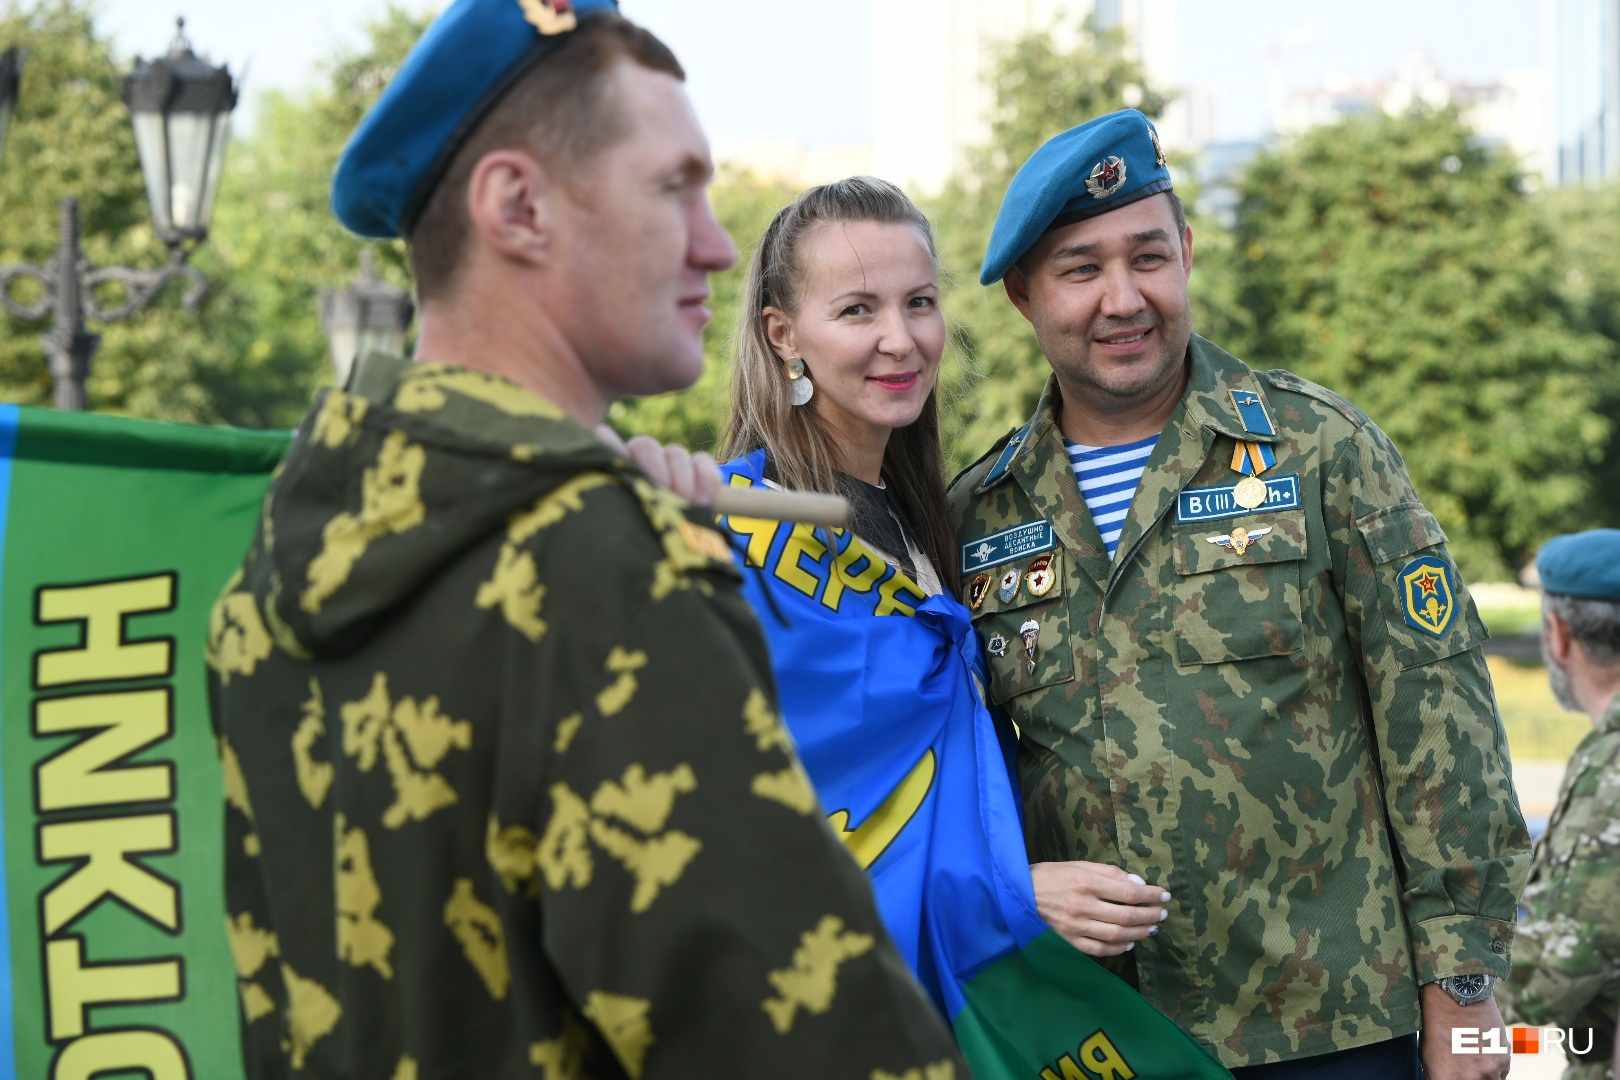 В тельняшках, голубых беретах и с флагами: фото боевых подруг десантников со Дня ВДВ в Екатеринбурге